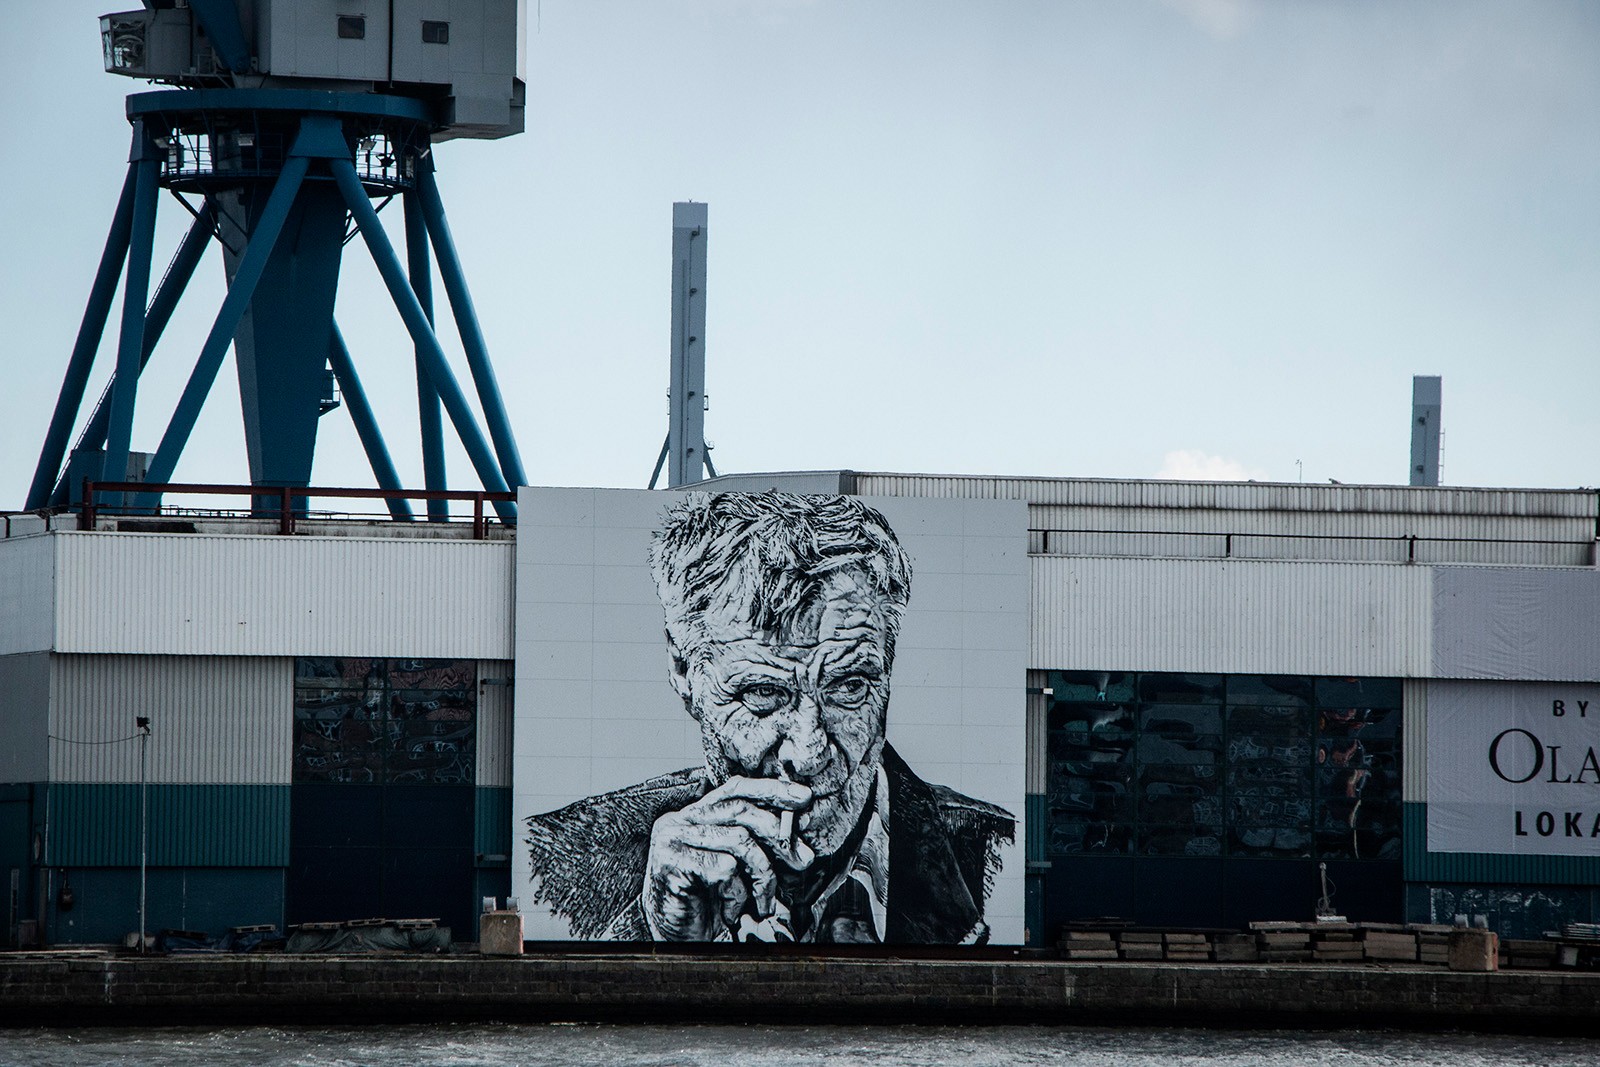 Gavlmalerier i Aarhus</br>Den tyske  graffitikunstner Hendrik Beikirch har udsmykket havnen med et portræt af Olav de LInde. Motivet i hans værk er ofte portrætter af mennesker lavet i stor format i byrummet. </br>Foto: Mariana Gil